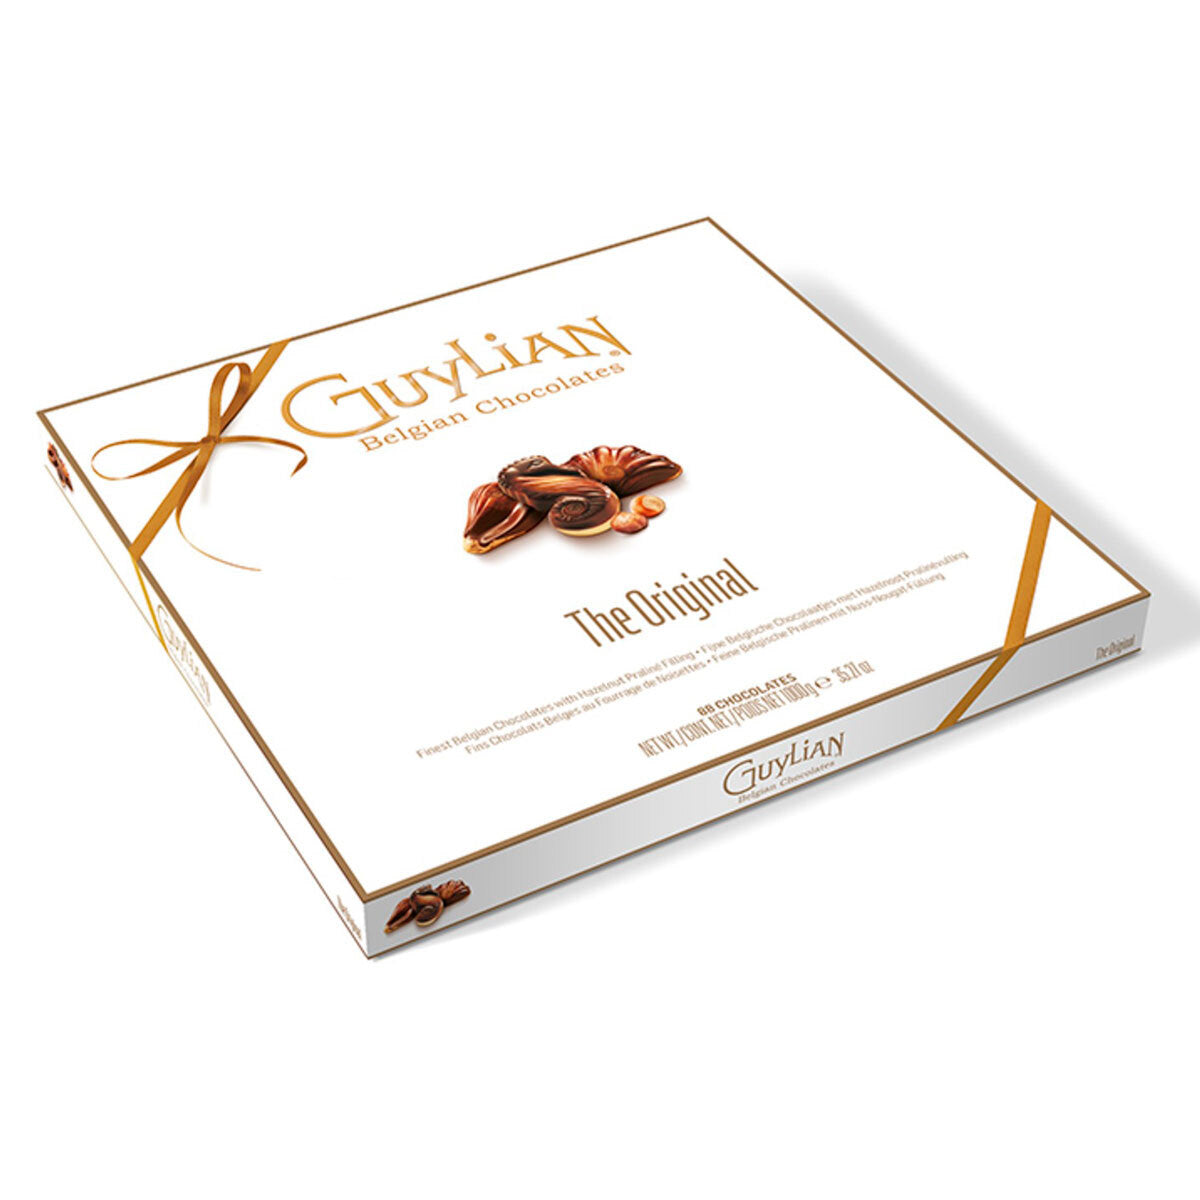 Guylian Belgian Chocolate Sea Shells, 1kg Snacks Costco UK   